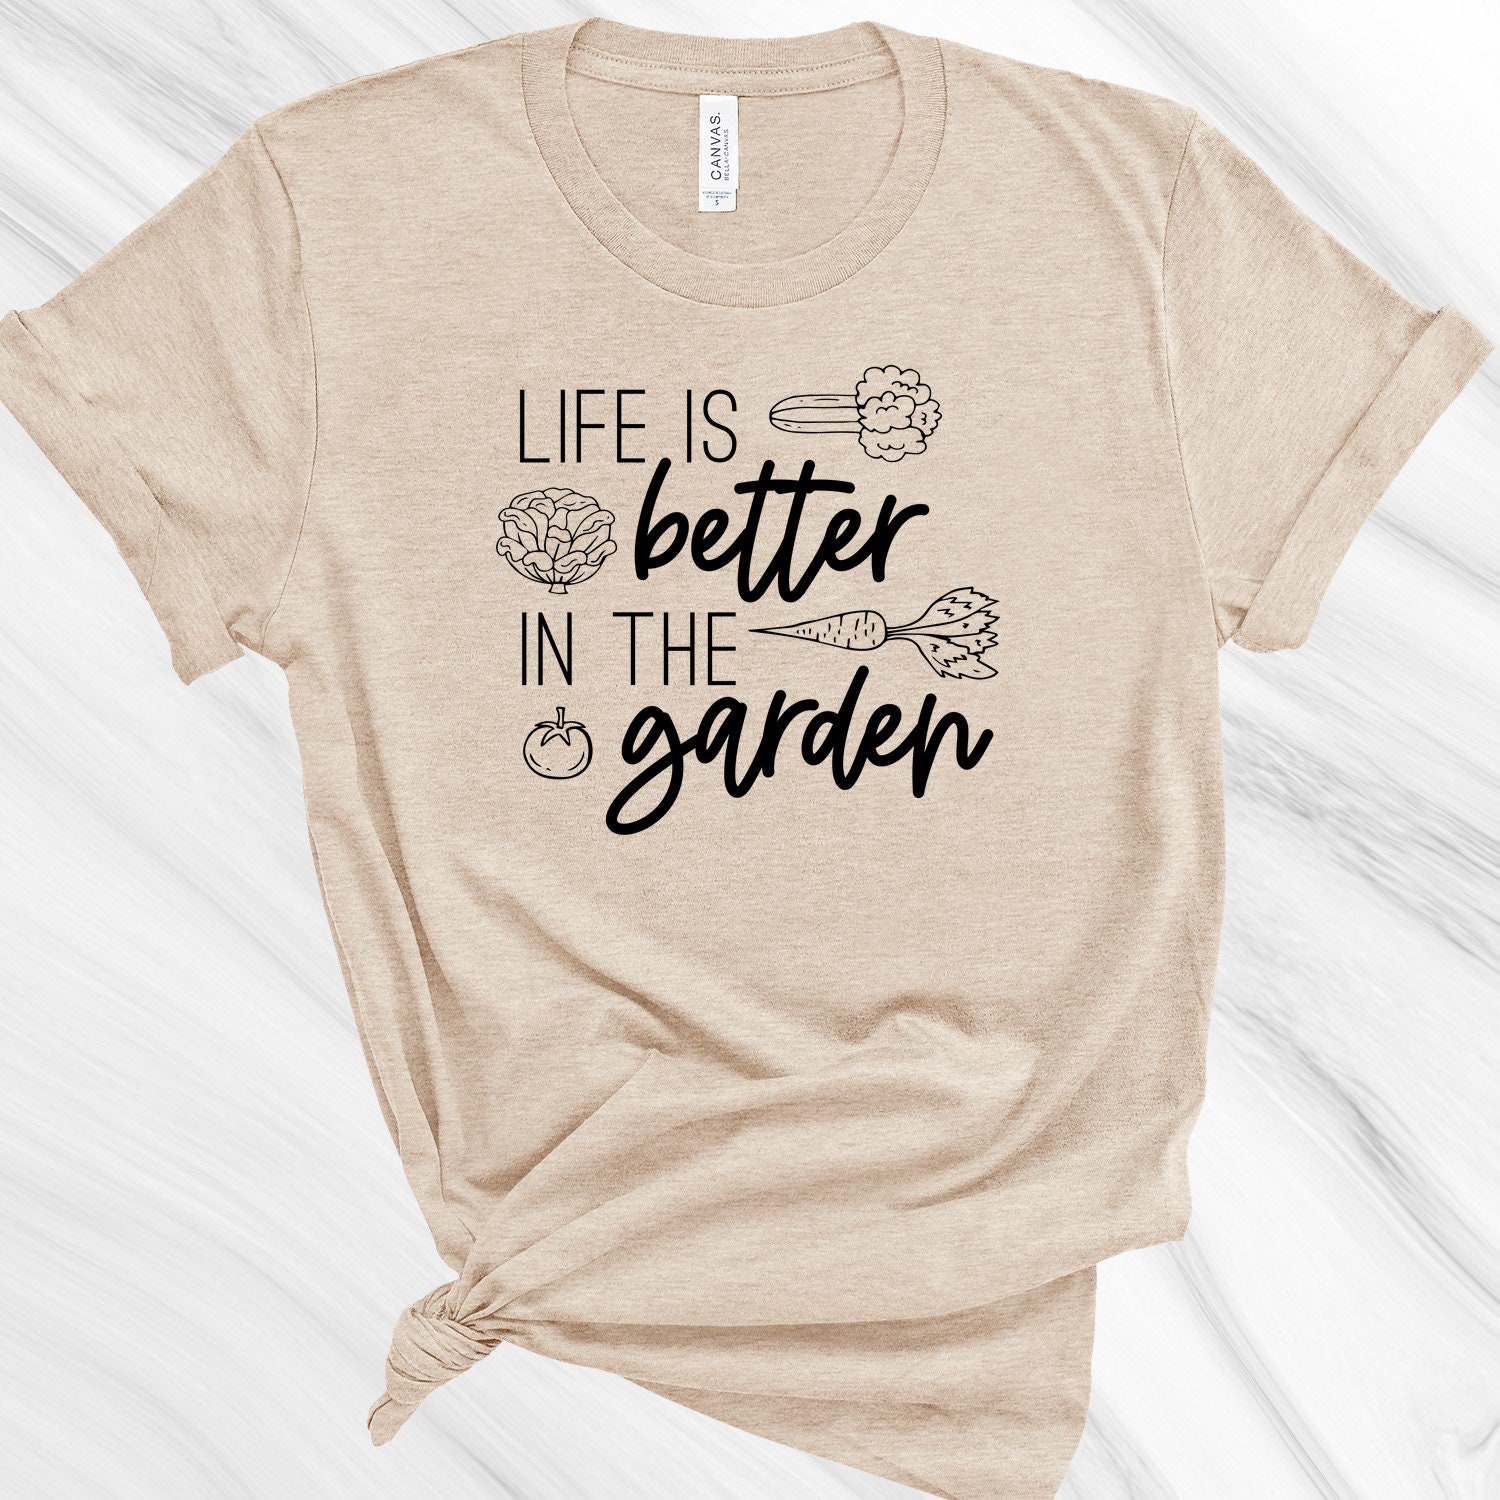 Gift for Gardener Love Plants Tee Plant Lover Garden Lover Women's Plant T-Shirt Plant Lover T-Shirt Earth Day Shirt Gardening Shirt